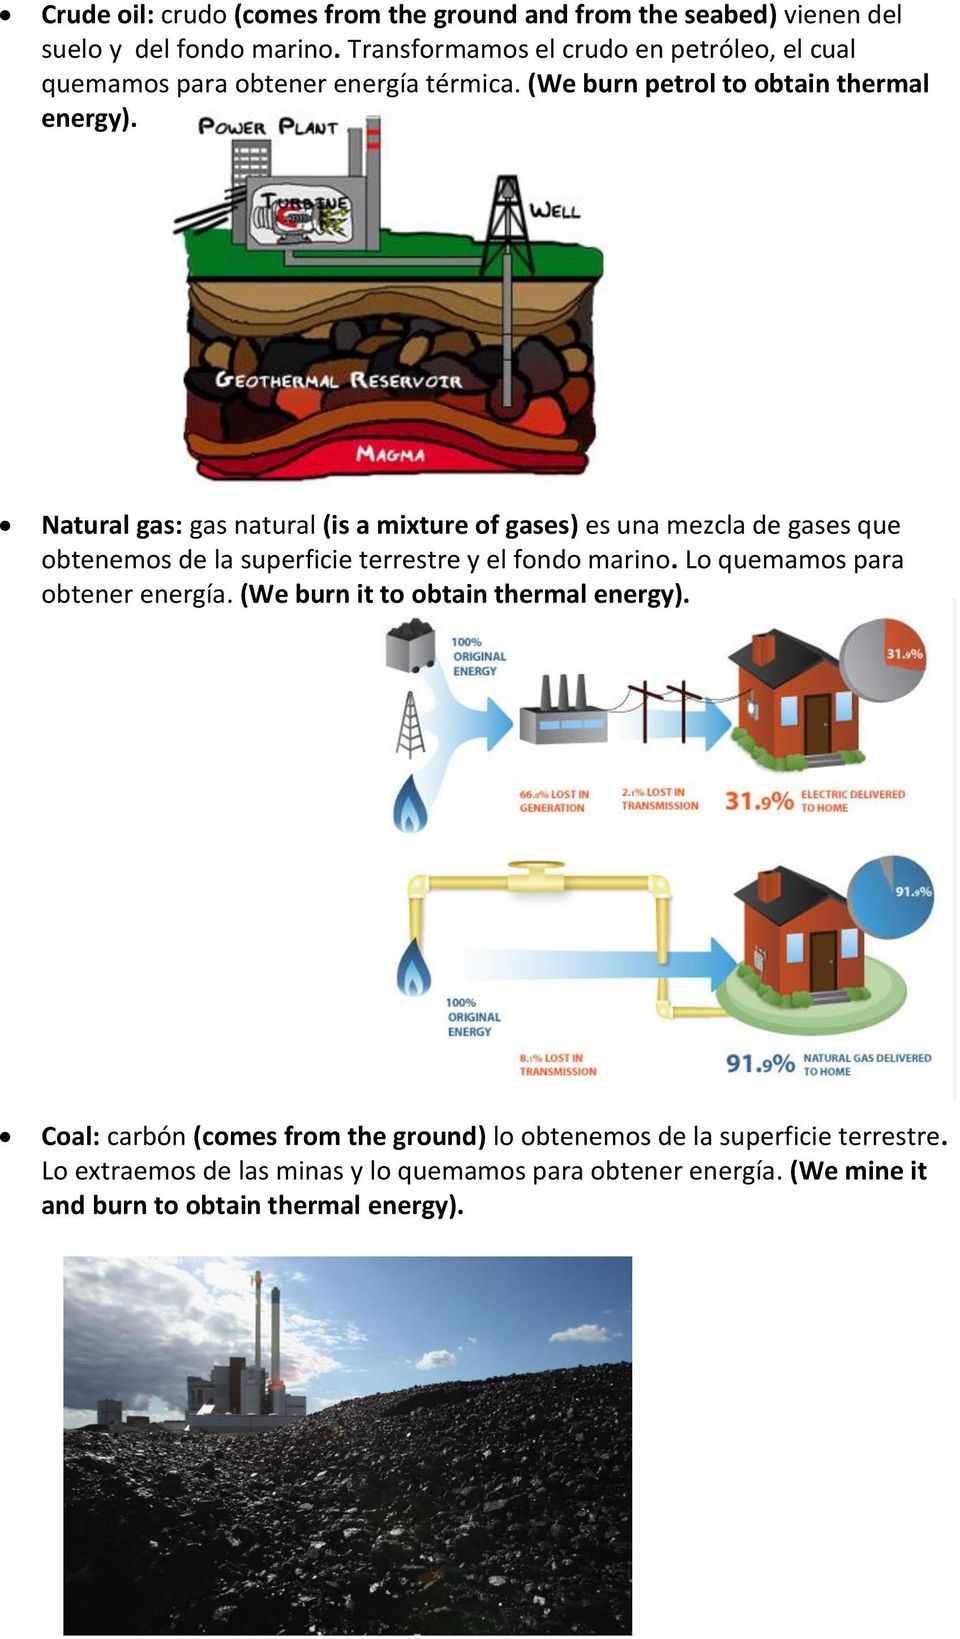 Natural gas: gas natural (is a mixture of gases) es una mezcla de gases que obtenemos de la superficie terrestre y el fondo marino.